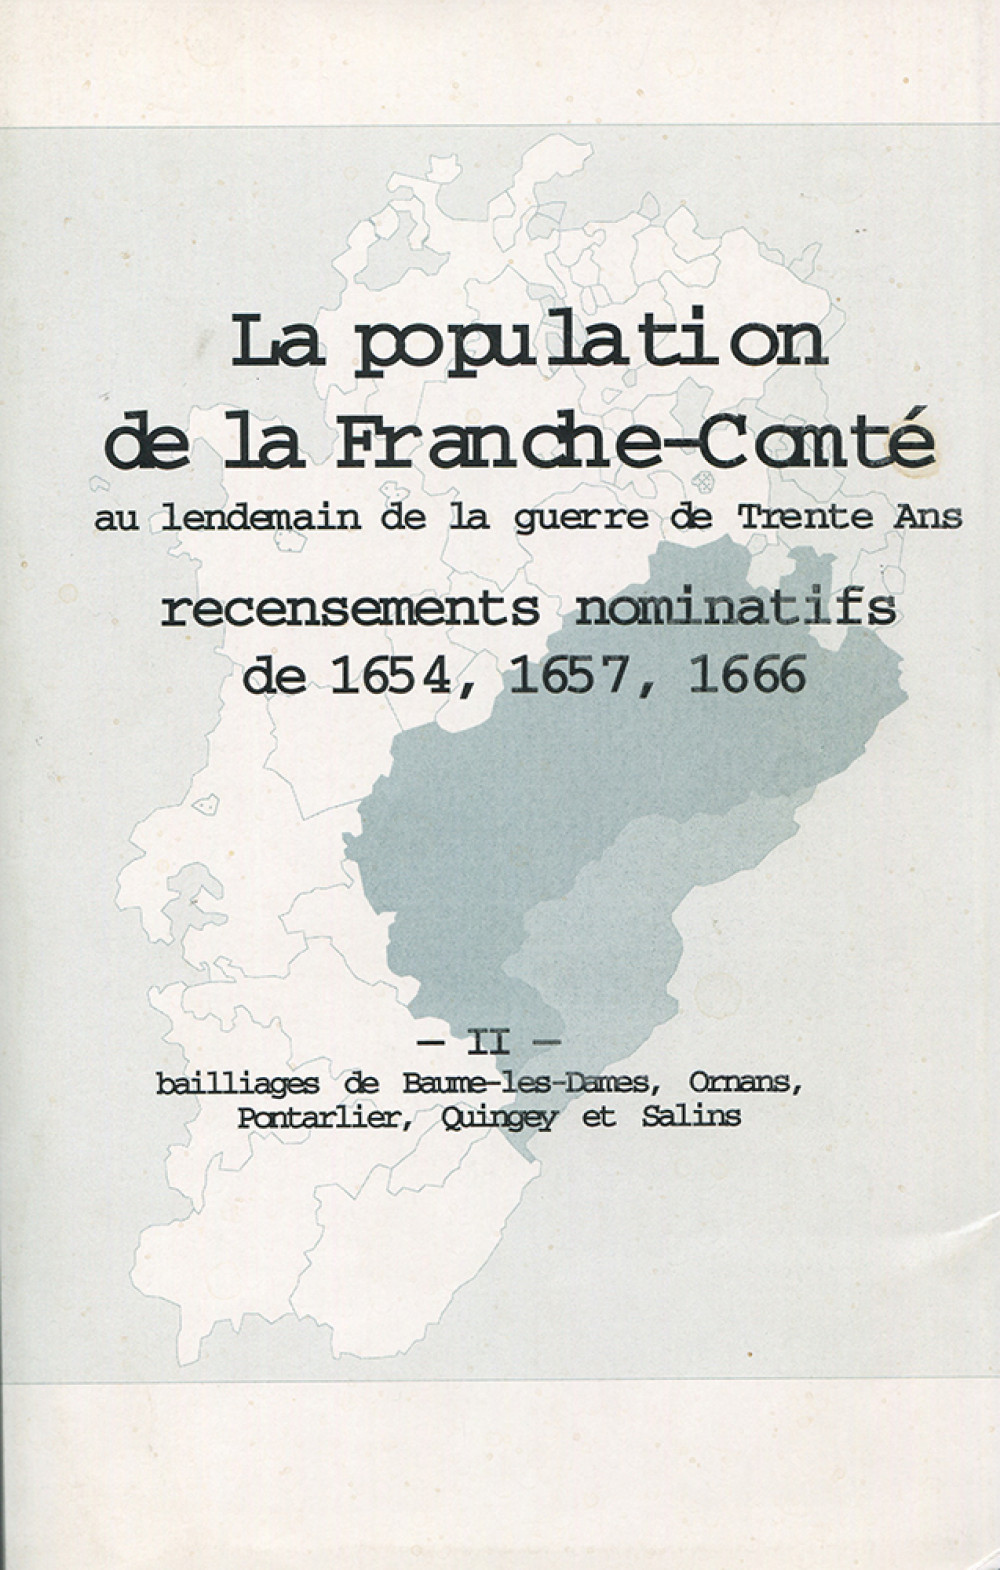 La population en Franche-Comté au lendemain de la guerre de Trente Ans. Tome II